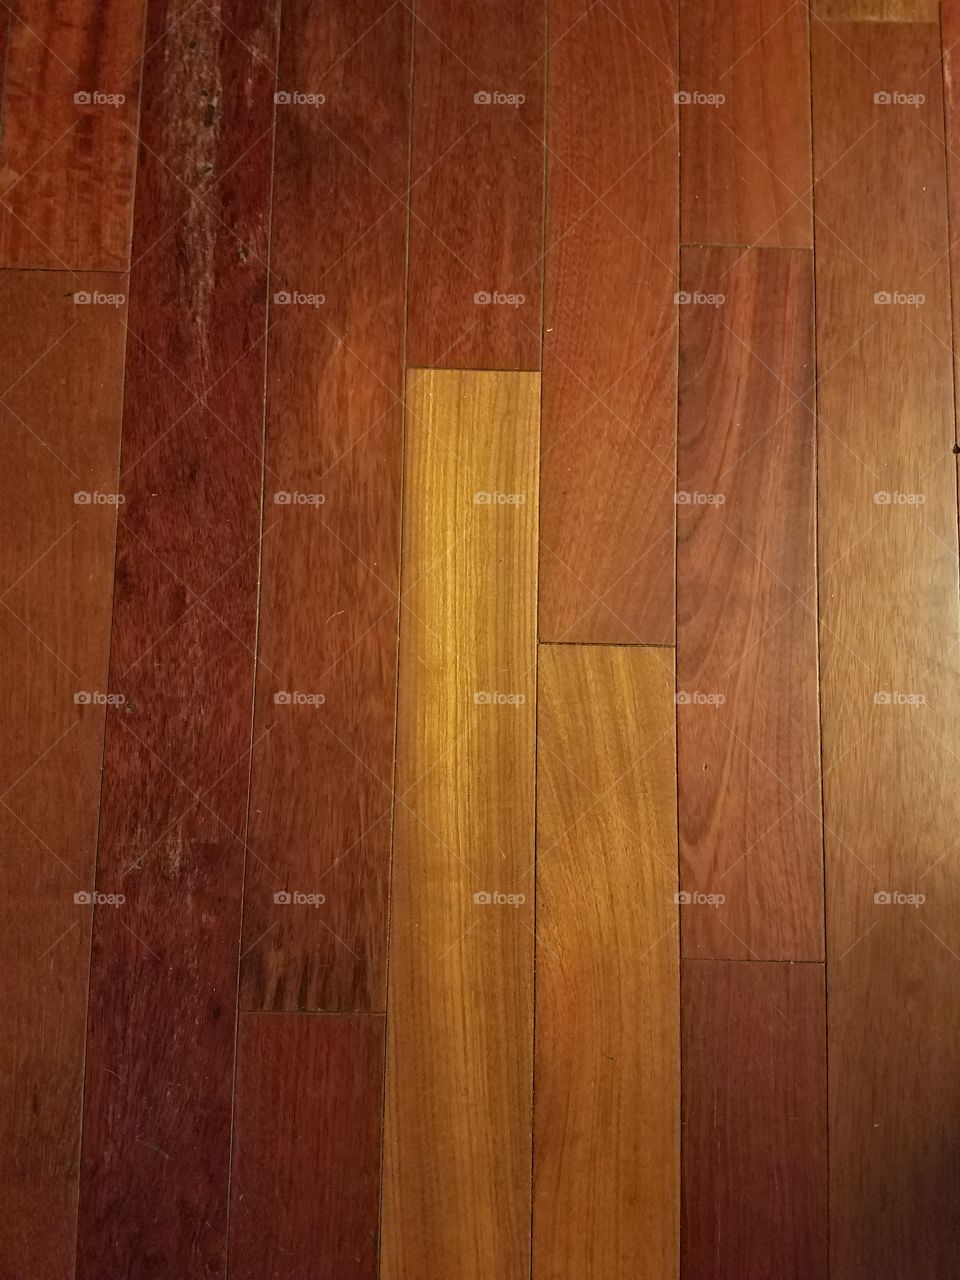 Wood Grain Floor